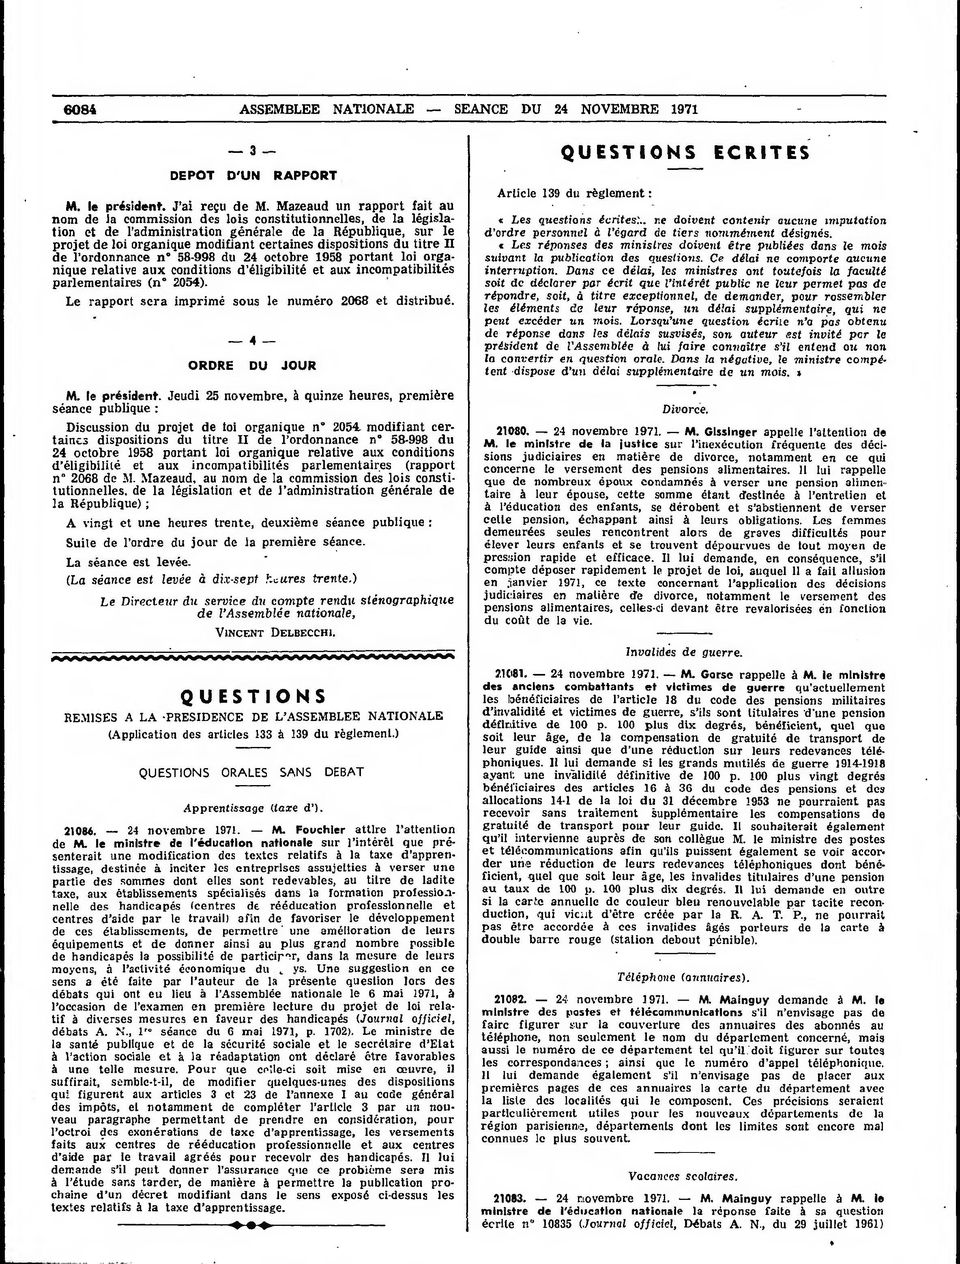 dispositions du titre II de l'ordonnance n 58-998 du 24 octobre 1958 portant loi organique relative aux conditions d'éligibilité et aux incompatibilités parlementaires (n 2054).